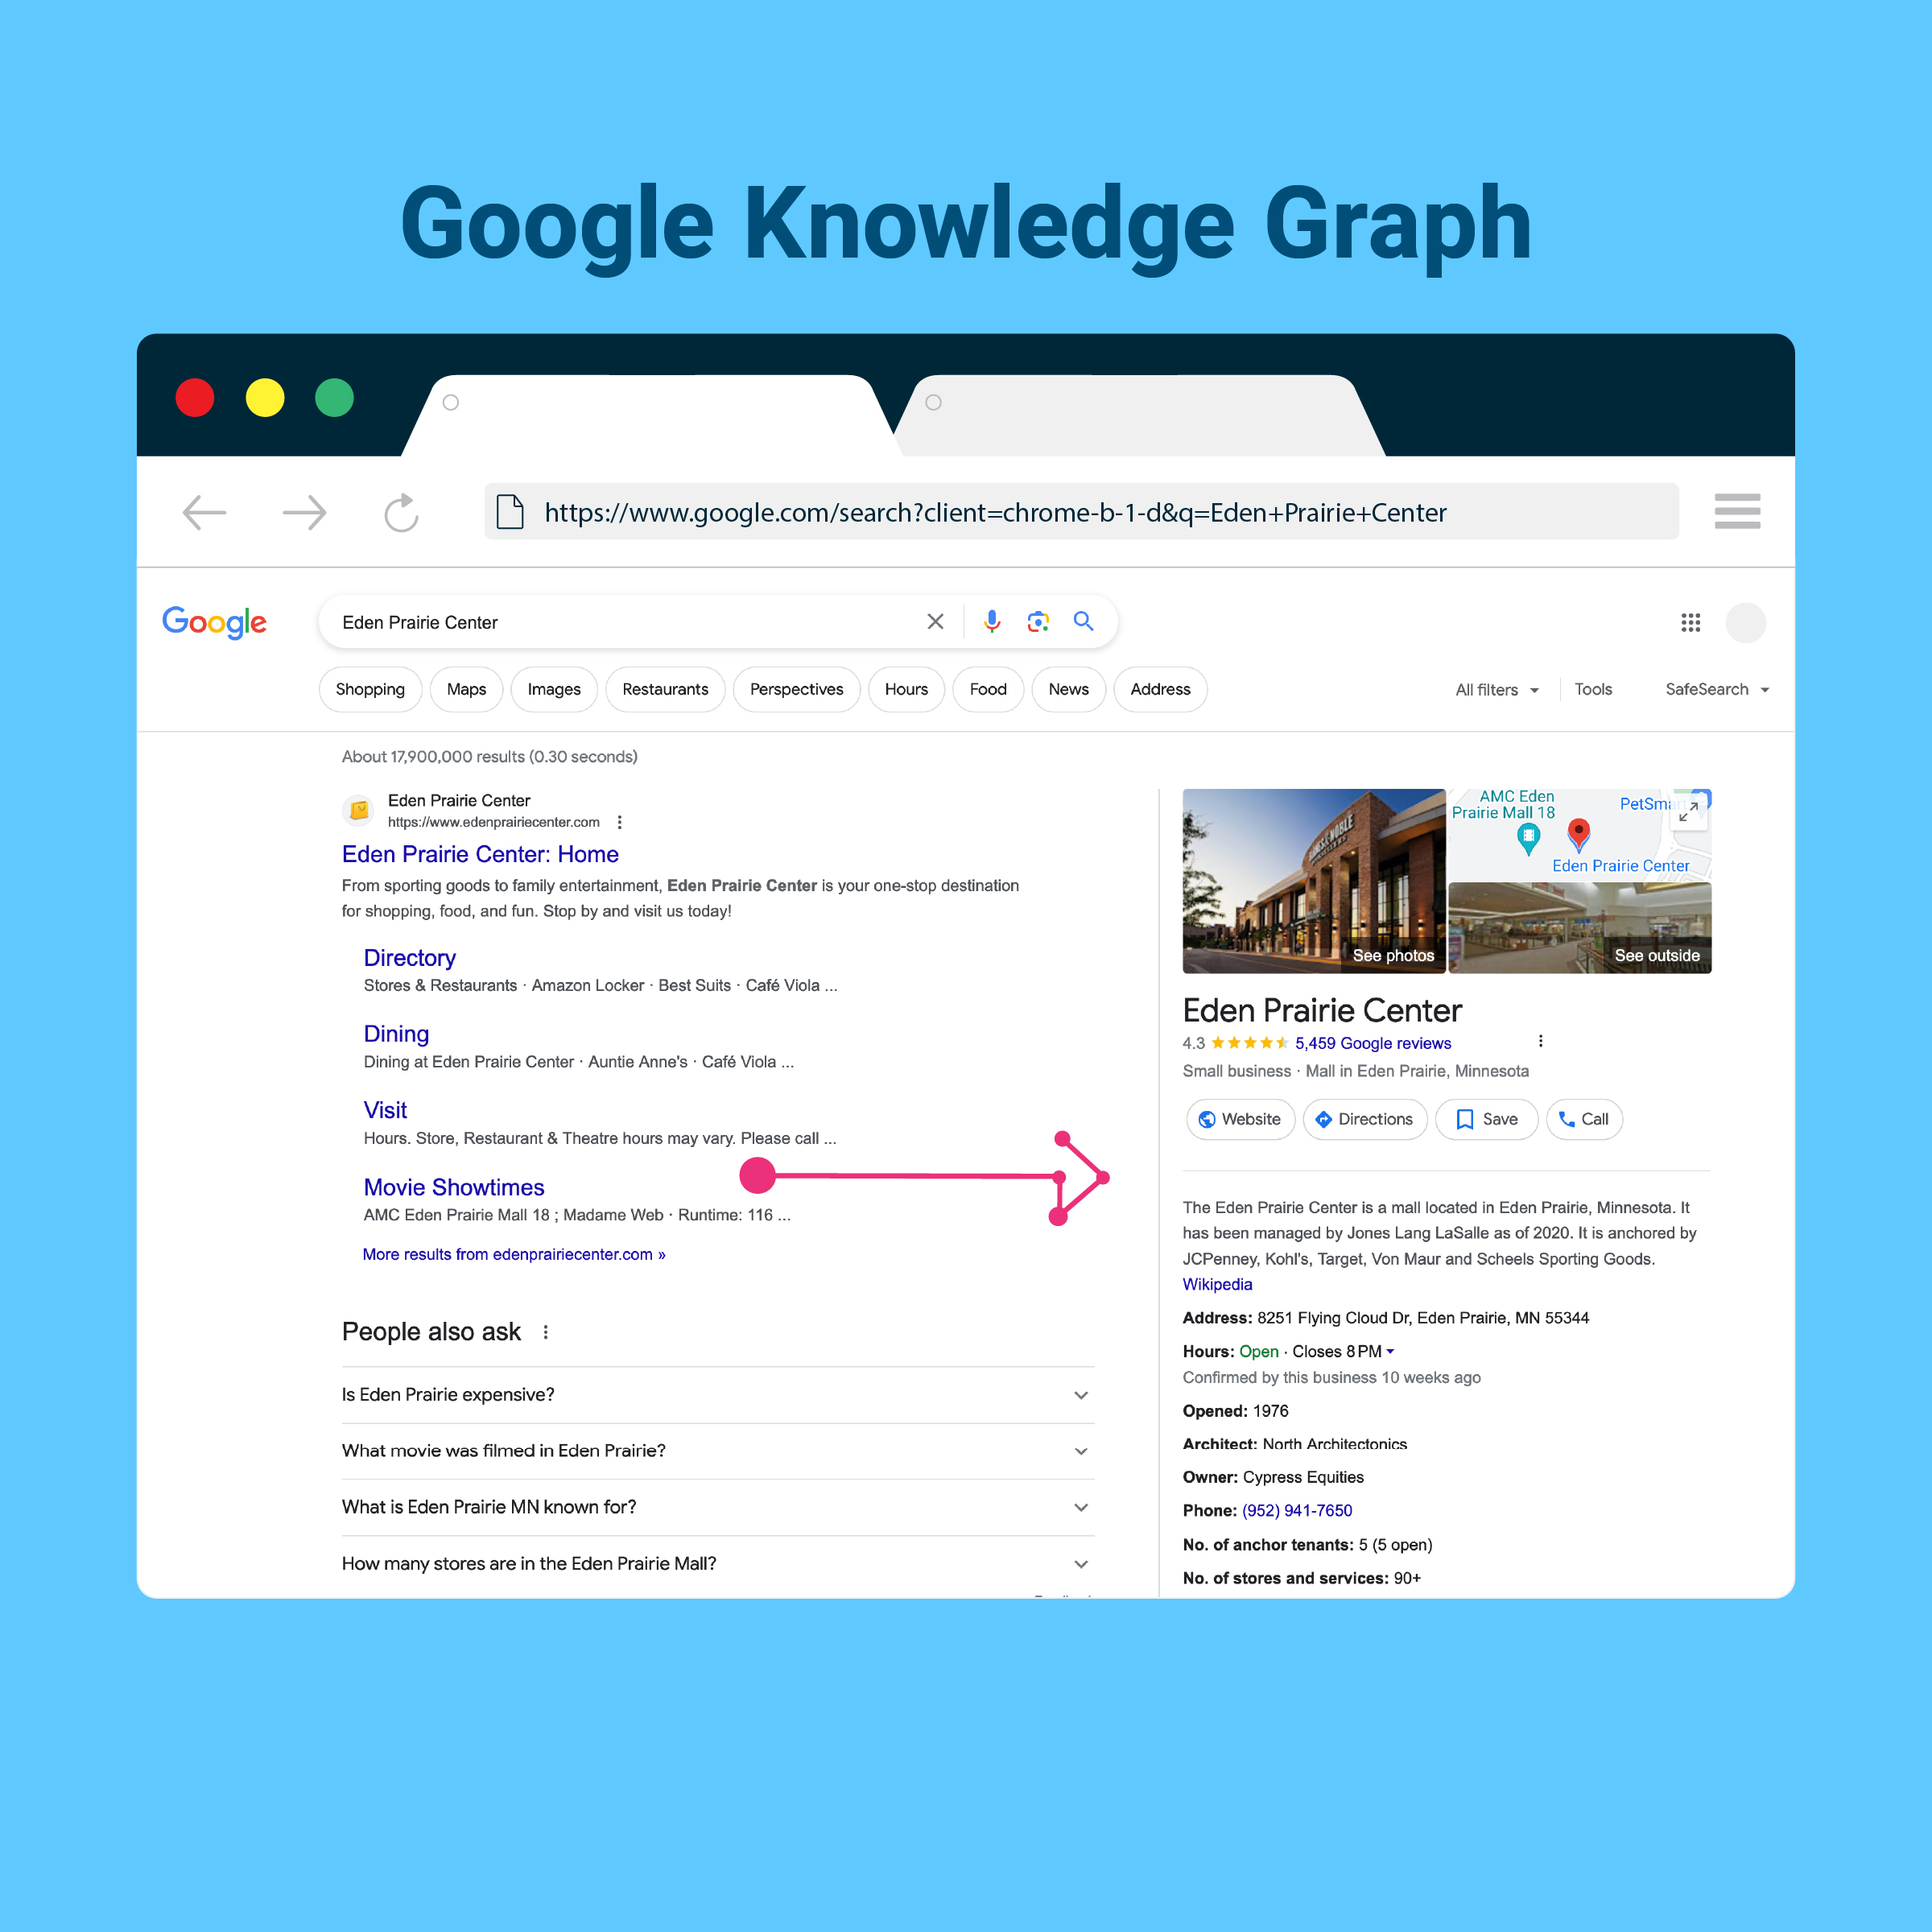 Google Knowledge Graph: Eden Prairie Center